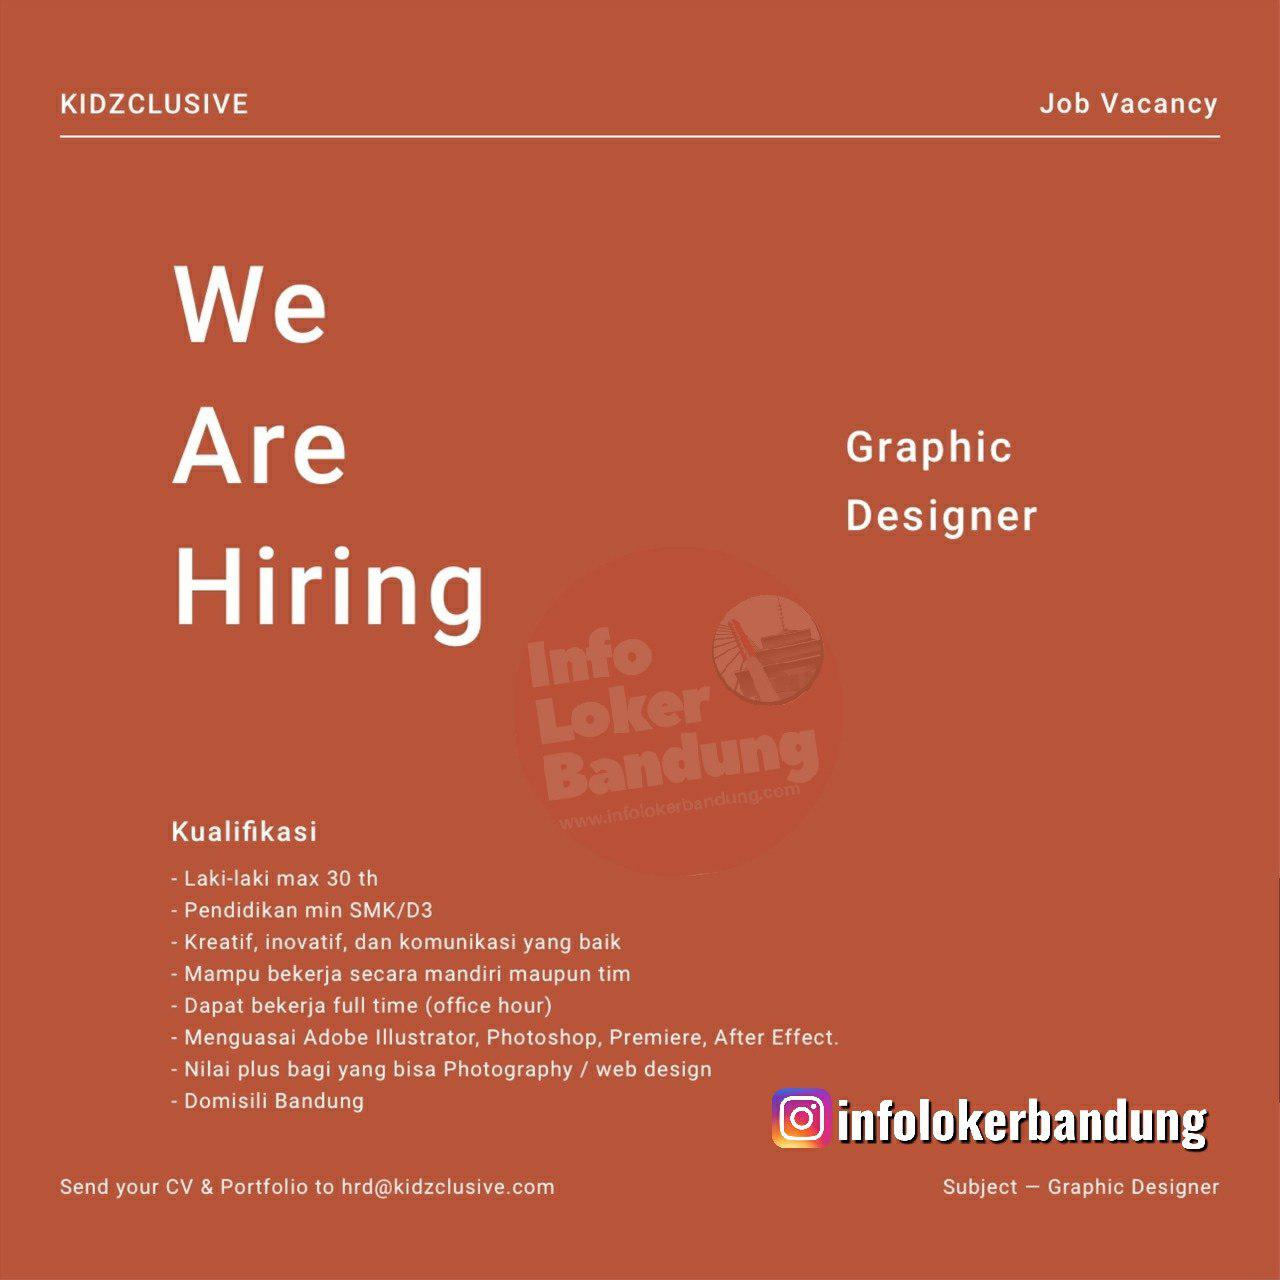 Lowongan Kerja Graphic Designer Kidzclusive Bandung Juli 2019